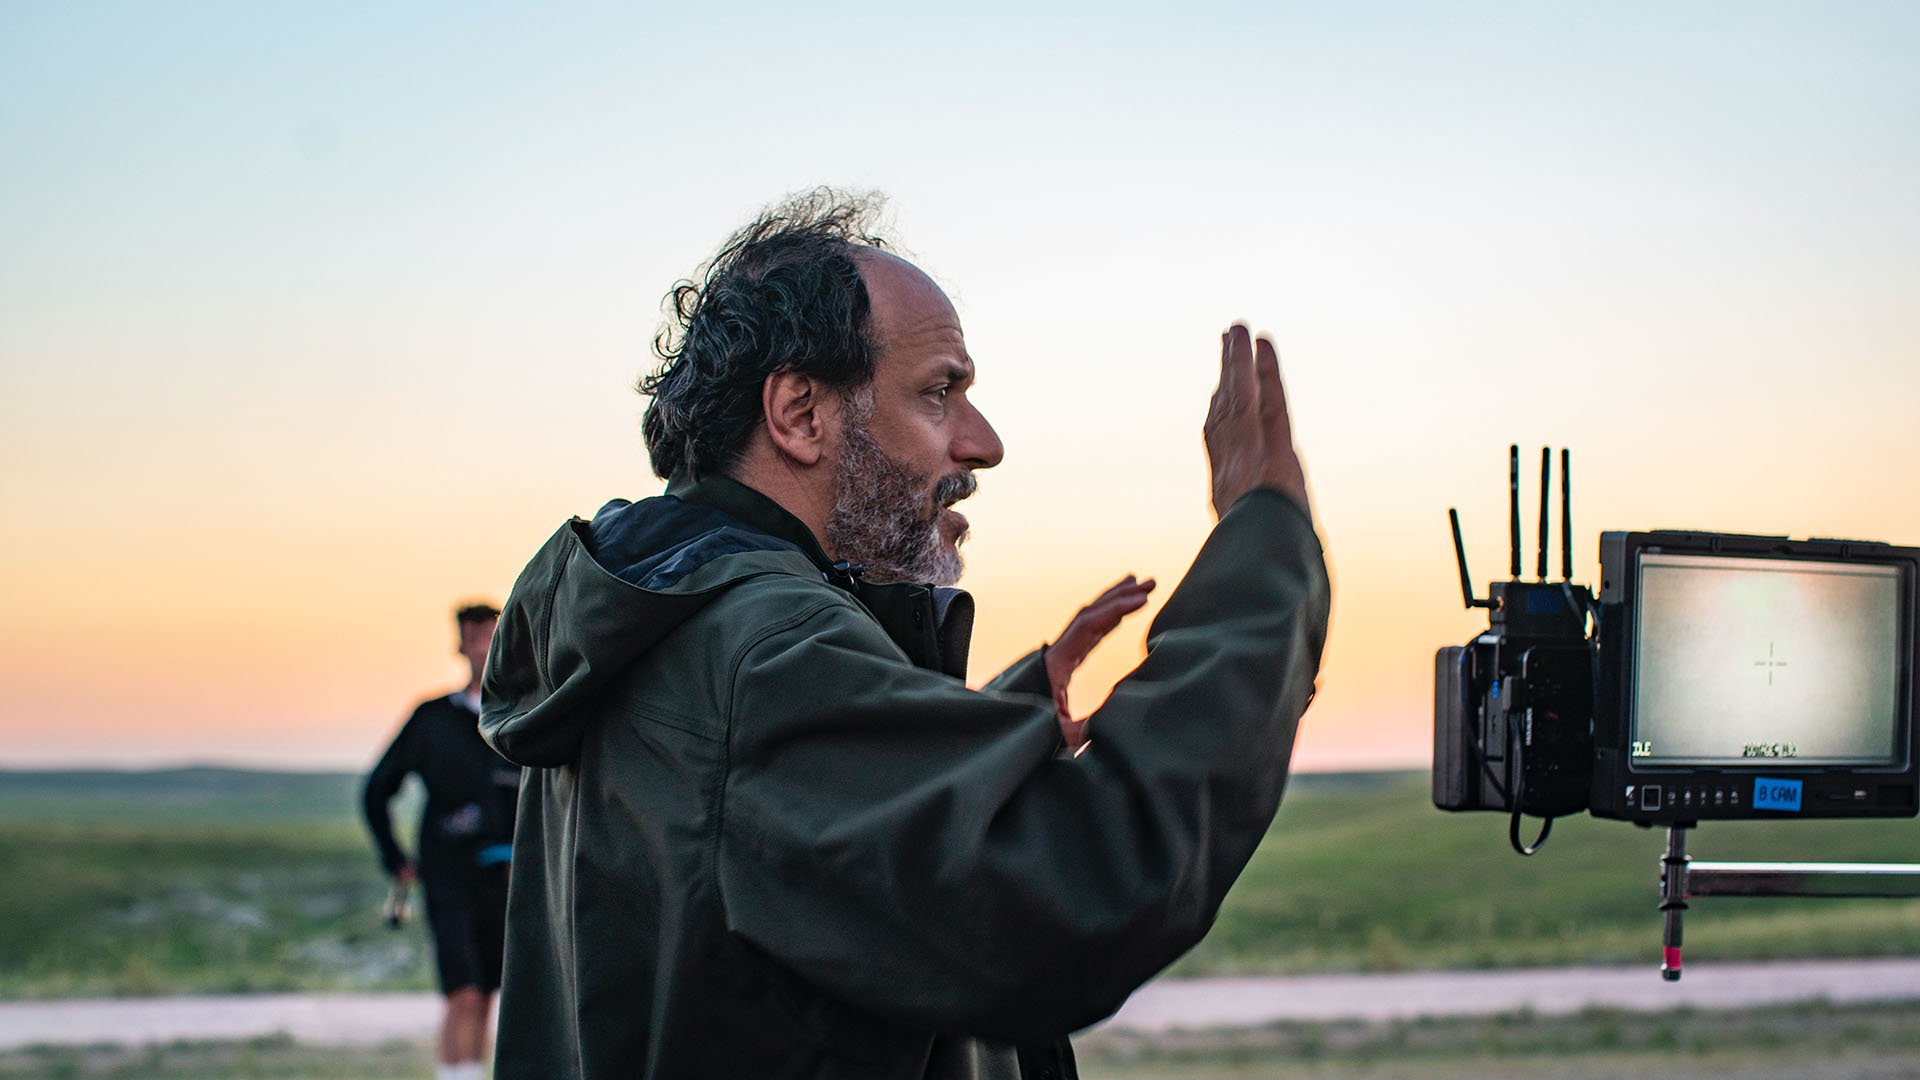 Luca Guadagnino regresa a dirigir tras "Suspiria", trabajo que realizó en 2018. (MGM)